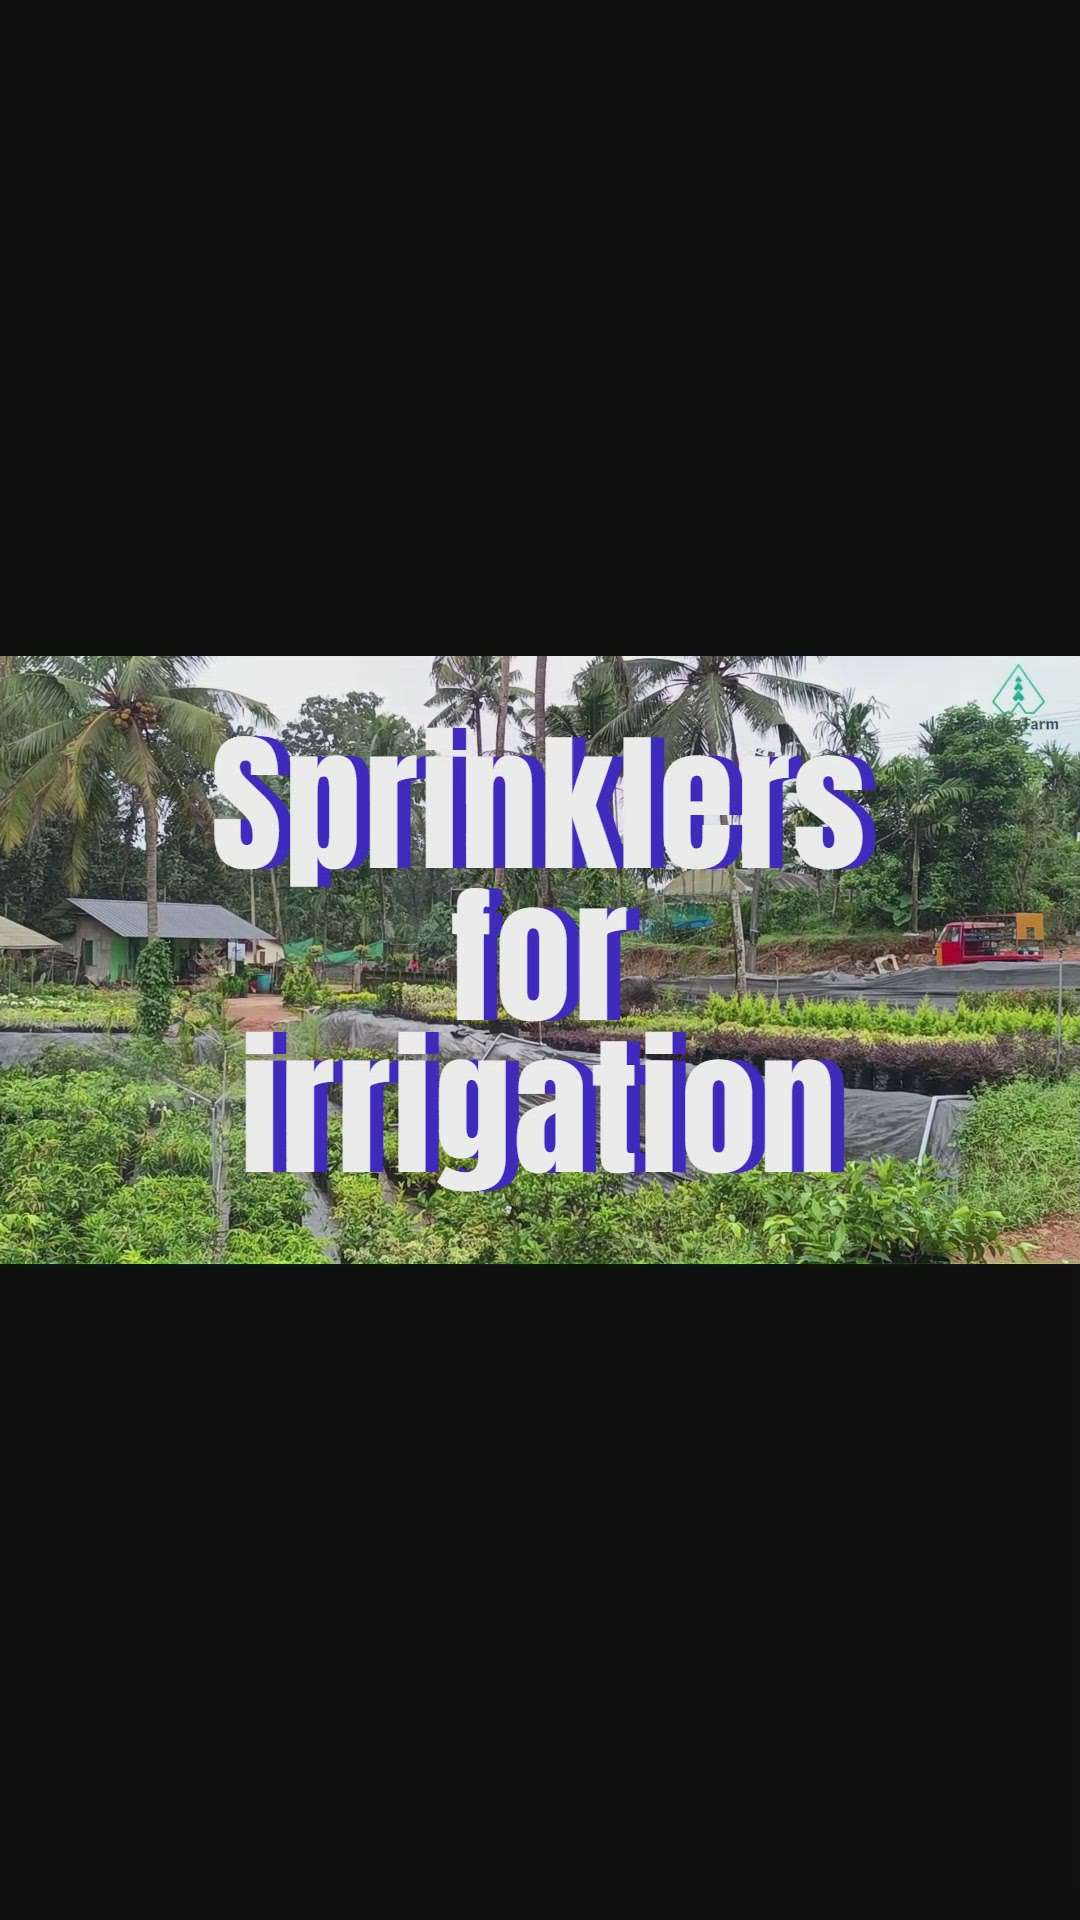 Sprinklers in action 
#sprinkler #Landscape #LandscapeIdeas #LandscapeGarden #LandscapeDesign #Lawncare #sprinkle